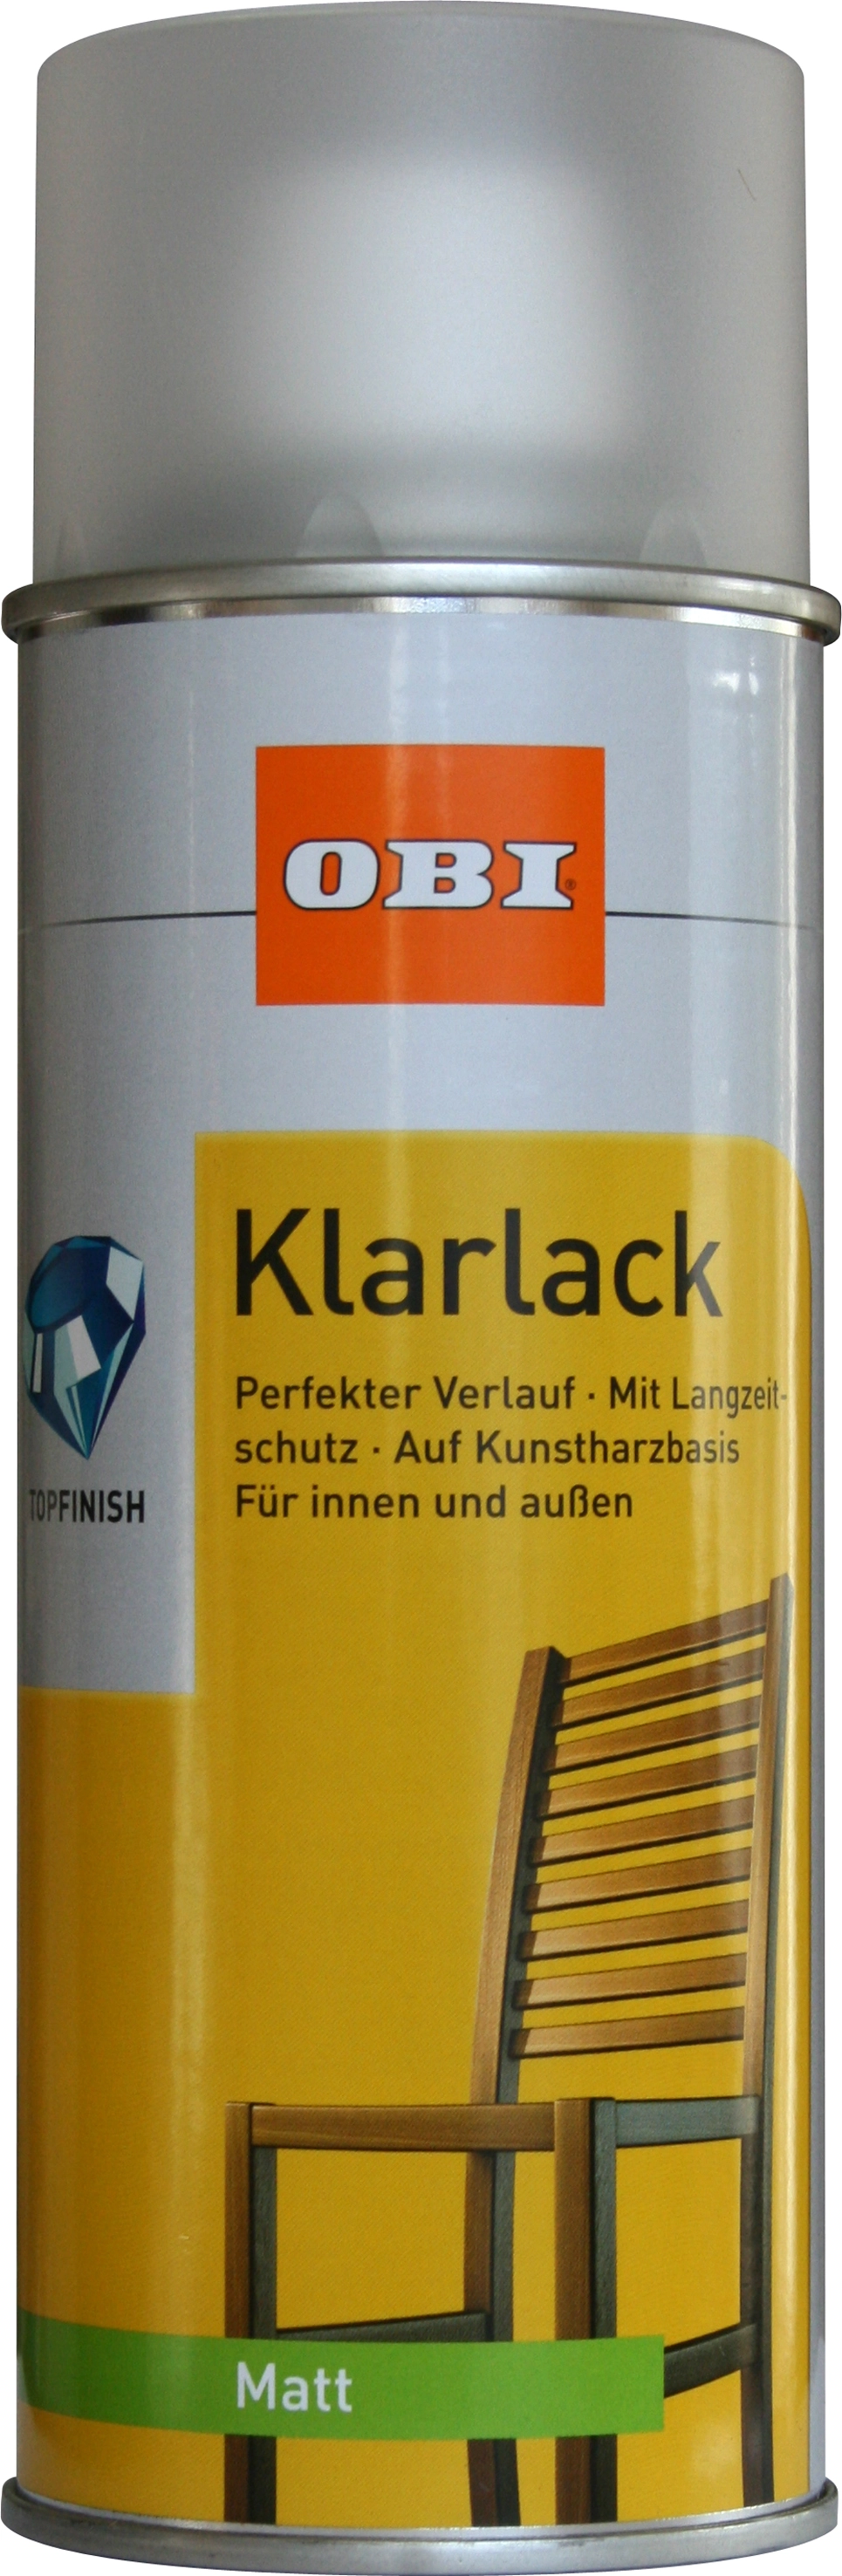 Klarlack-Sprays online kaufen bei OBI